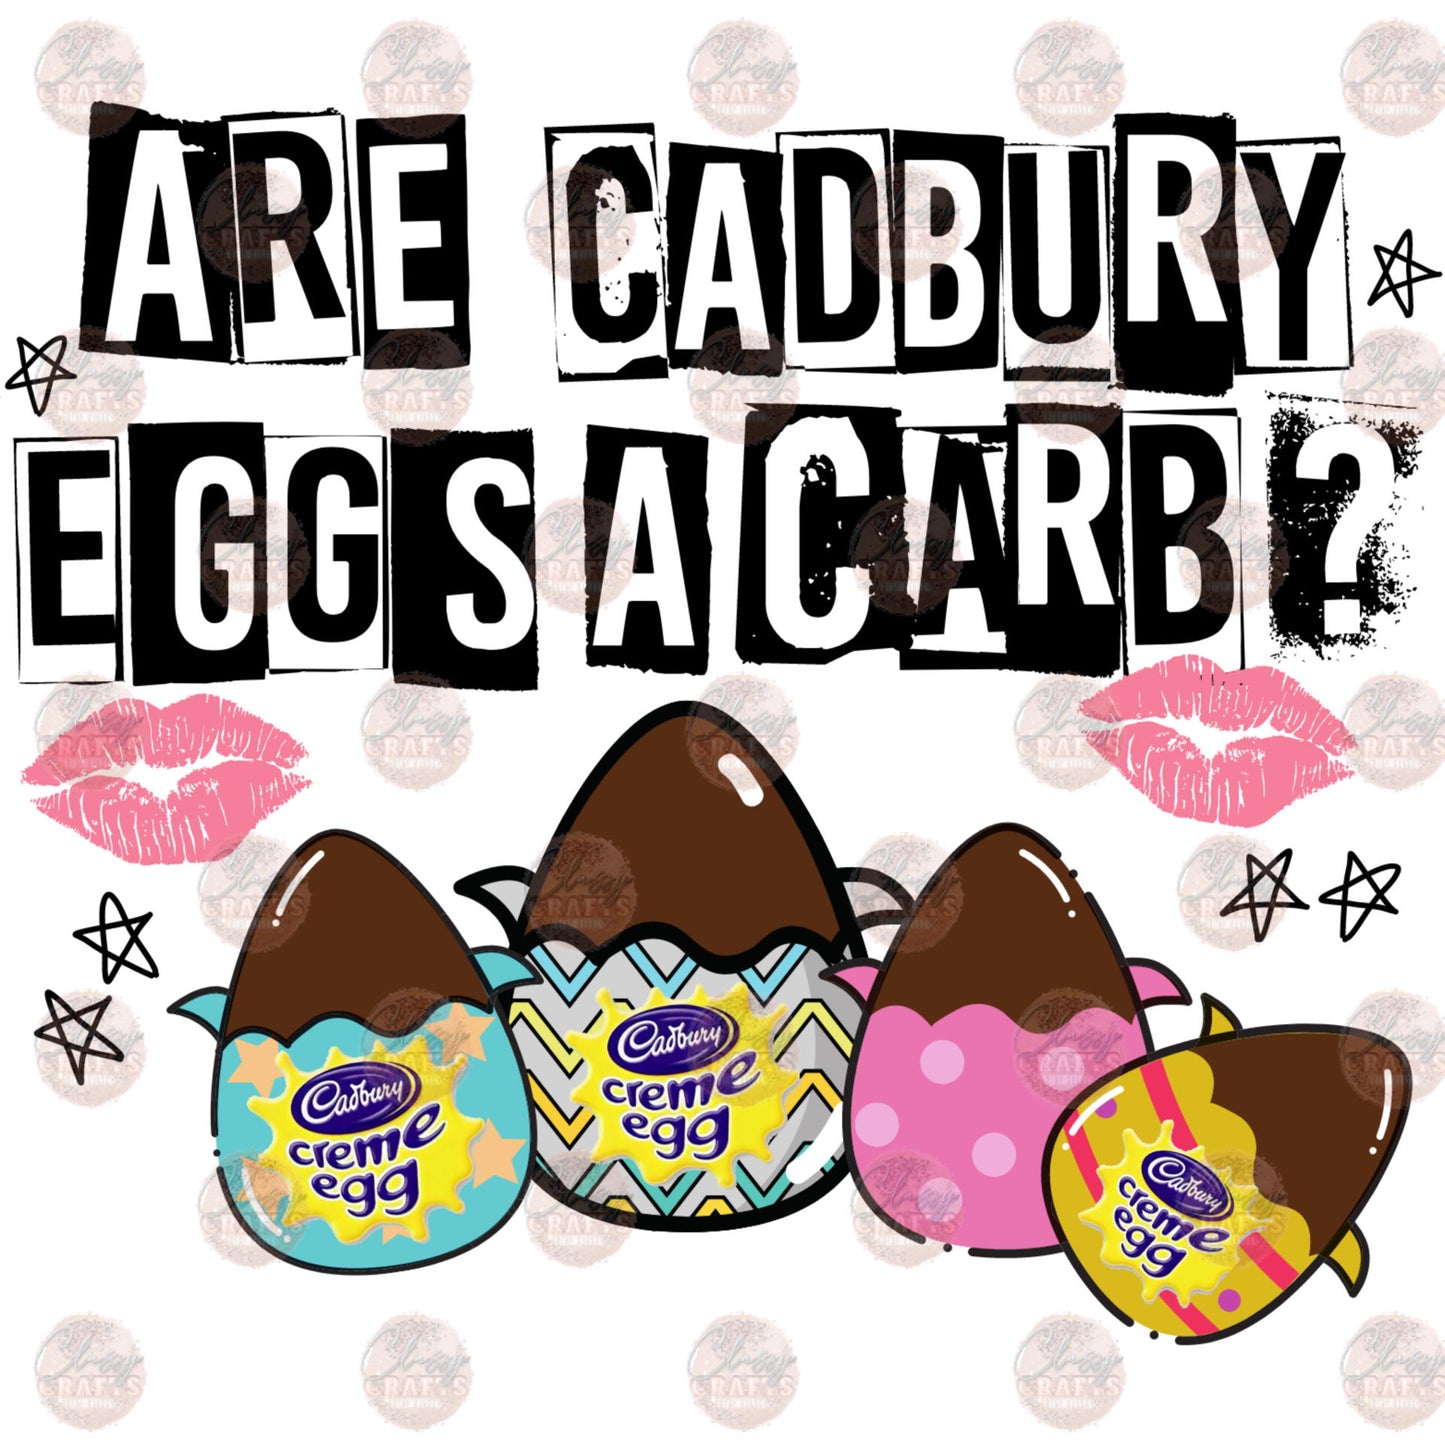 Are Cadbury Eggs A Carb? Transfer